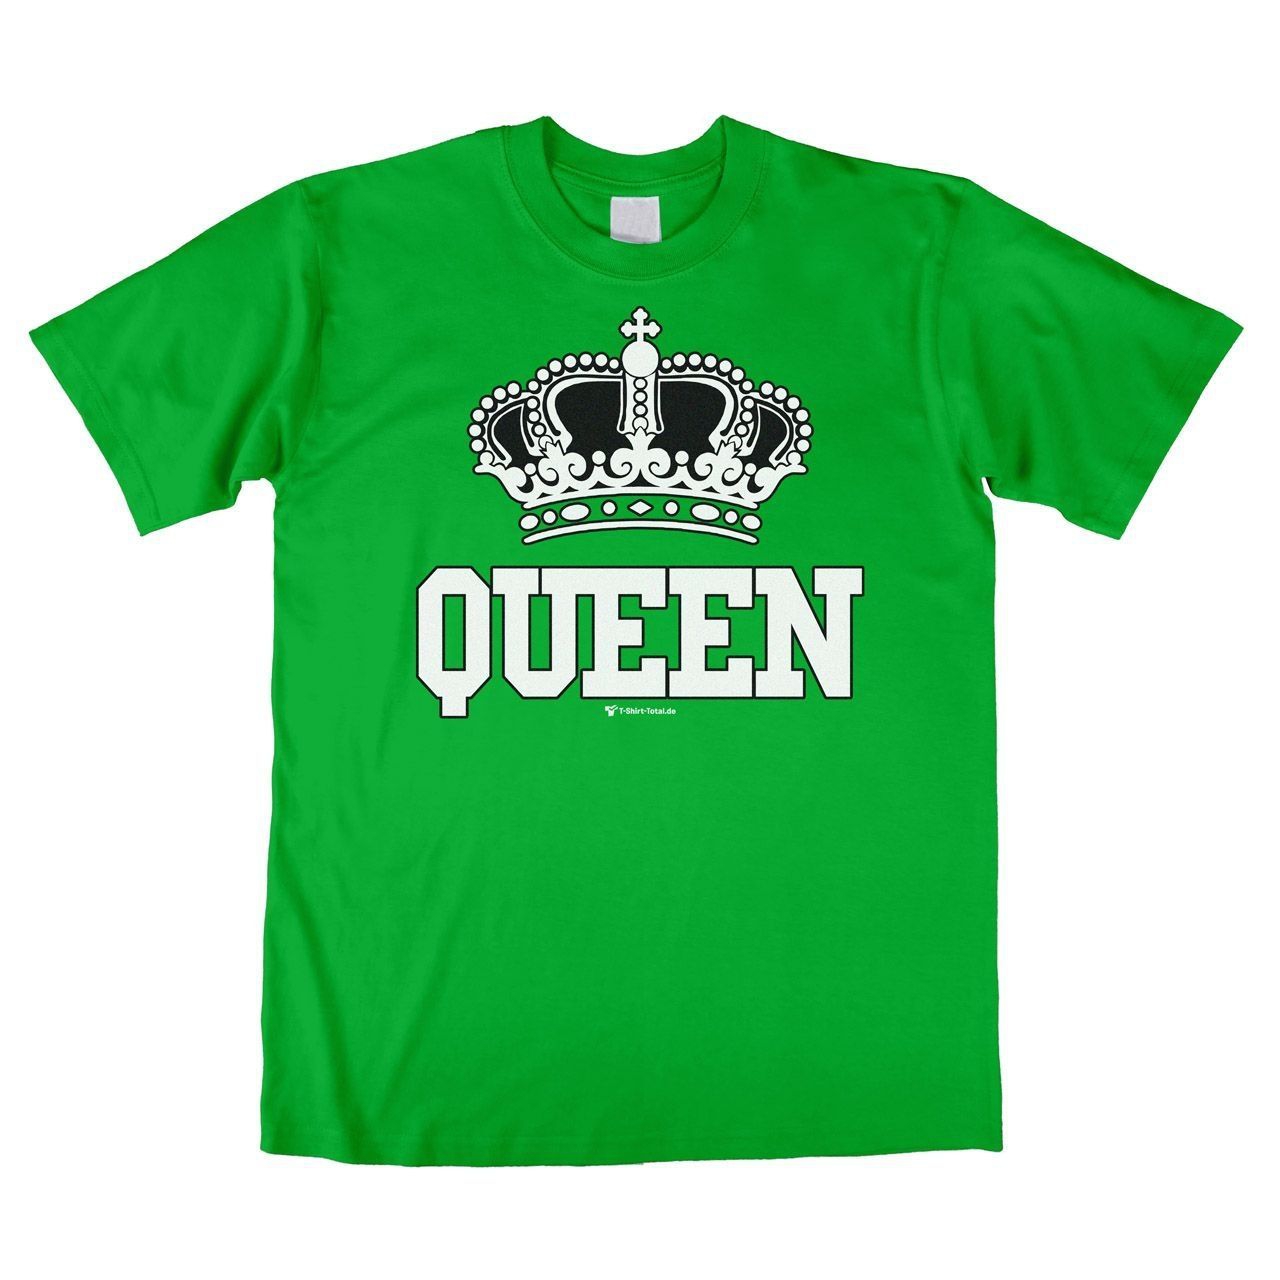 Queen Unisex T-Shirt grün Medium